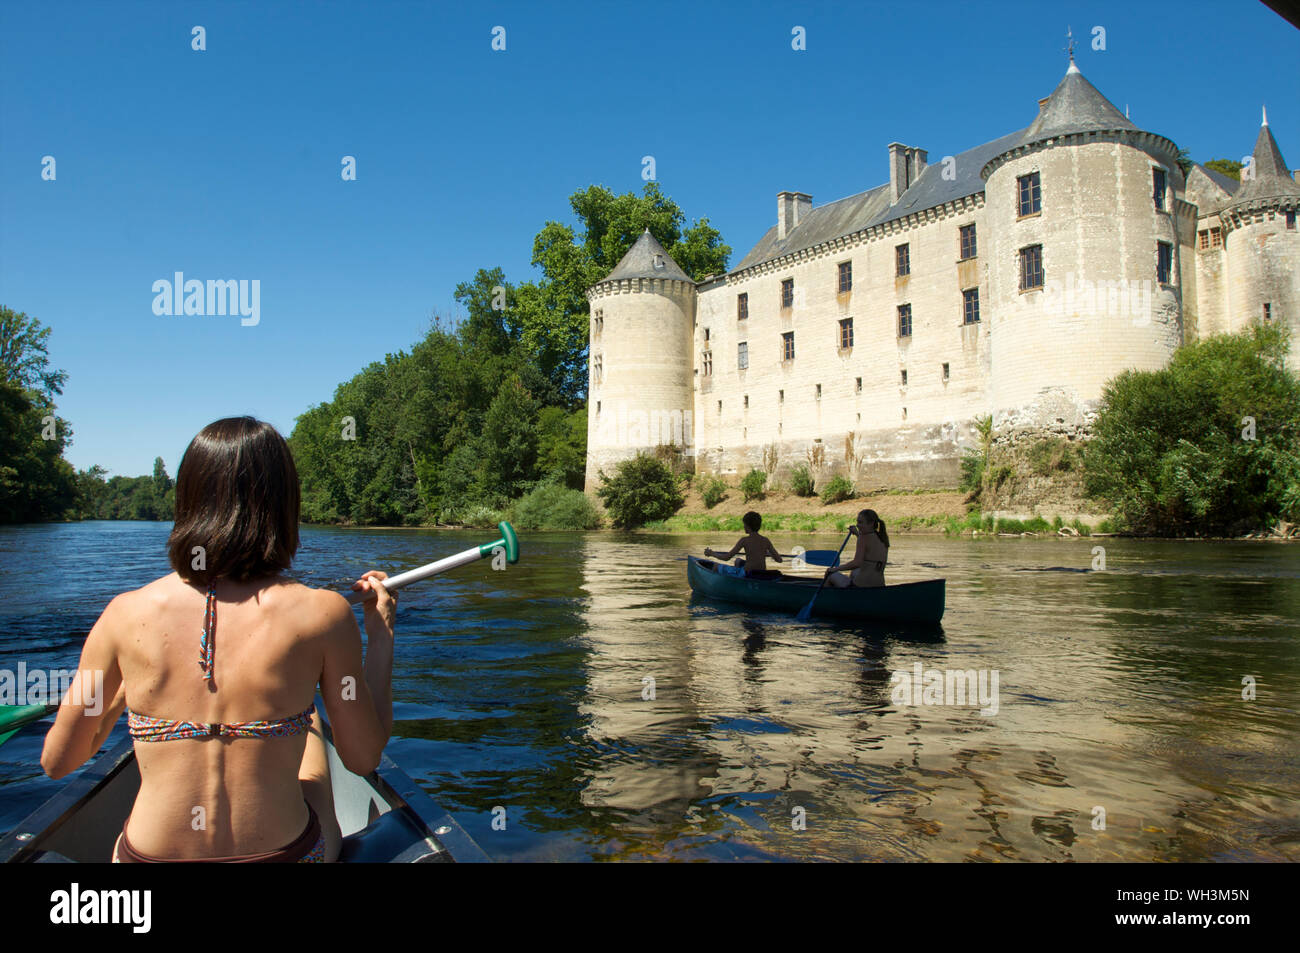 Das Chateau de La Guerche mit einer Familie in Kajaks auf dem Fluss La Creuse im Indre und Loire Tal, Frankreich Stockfoto